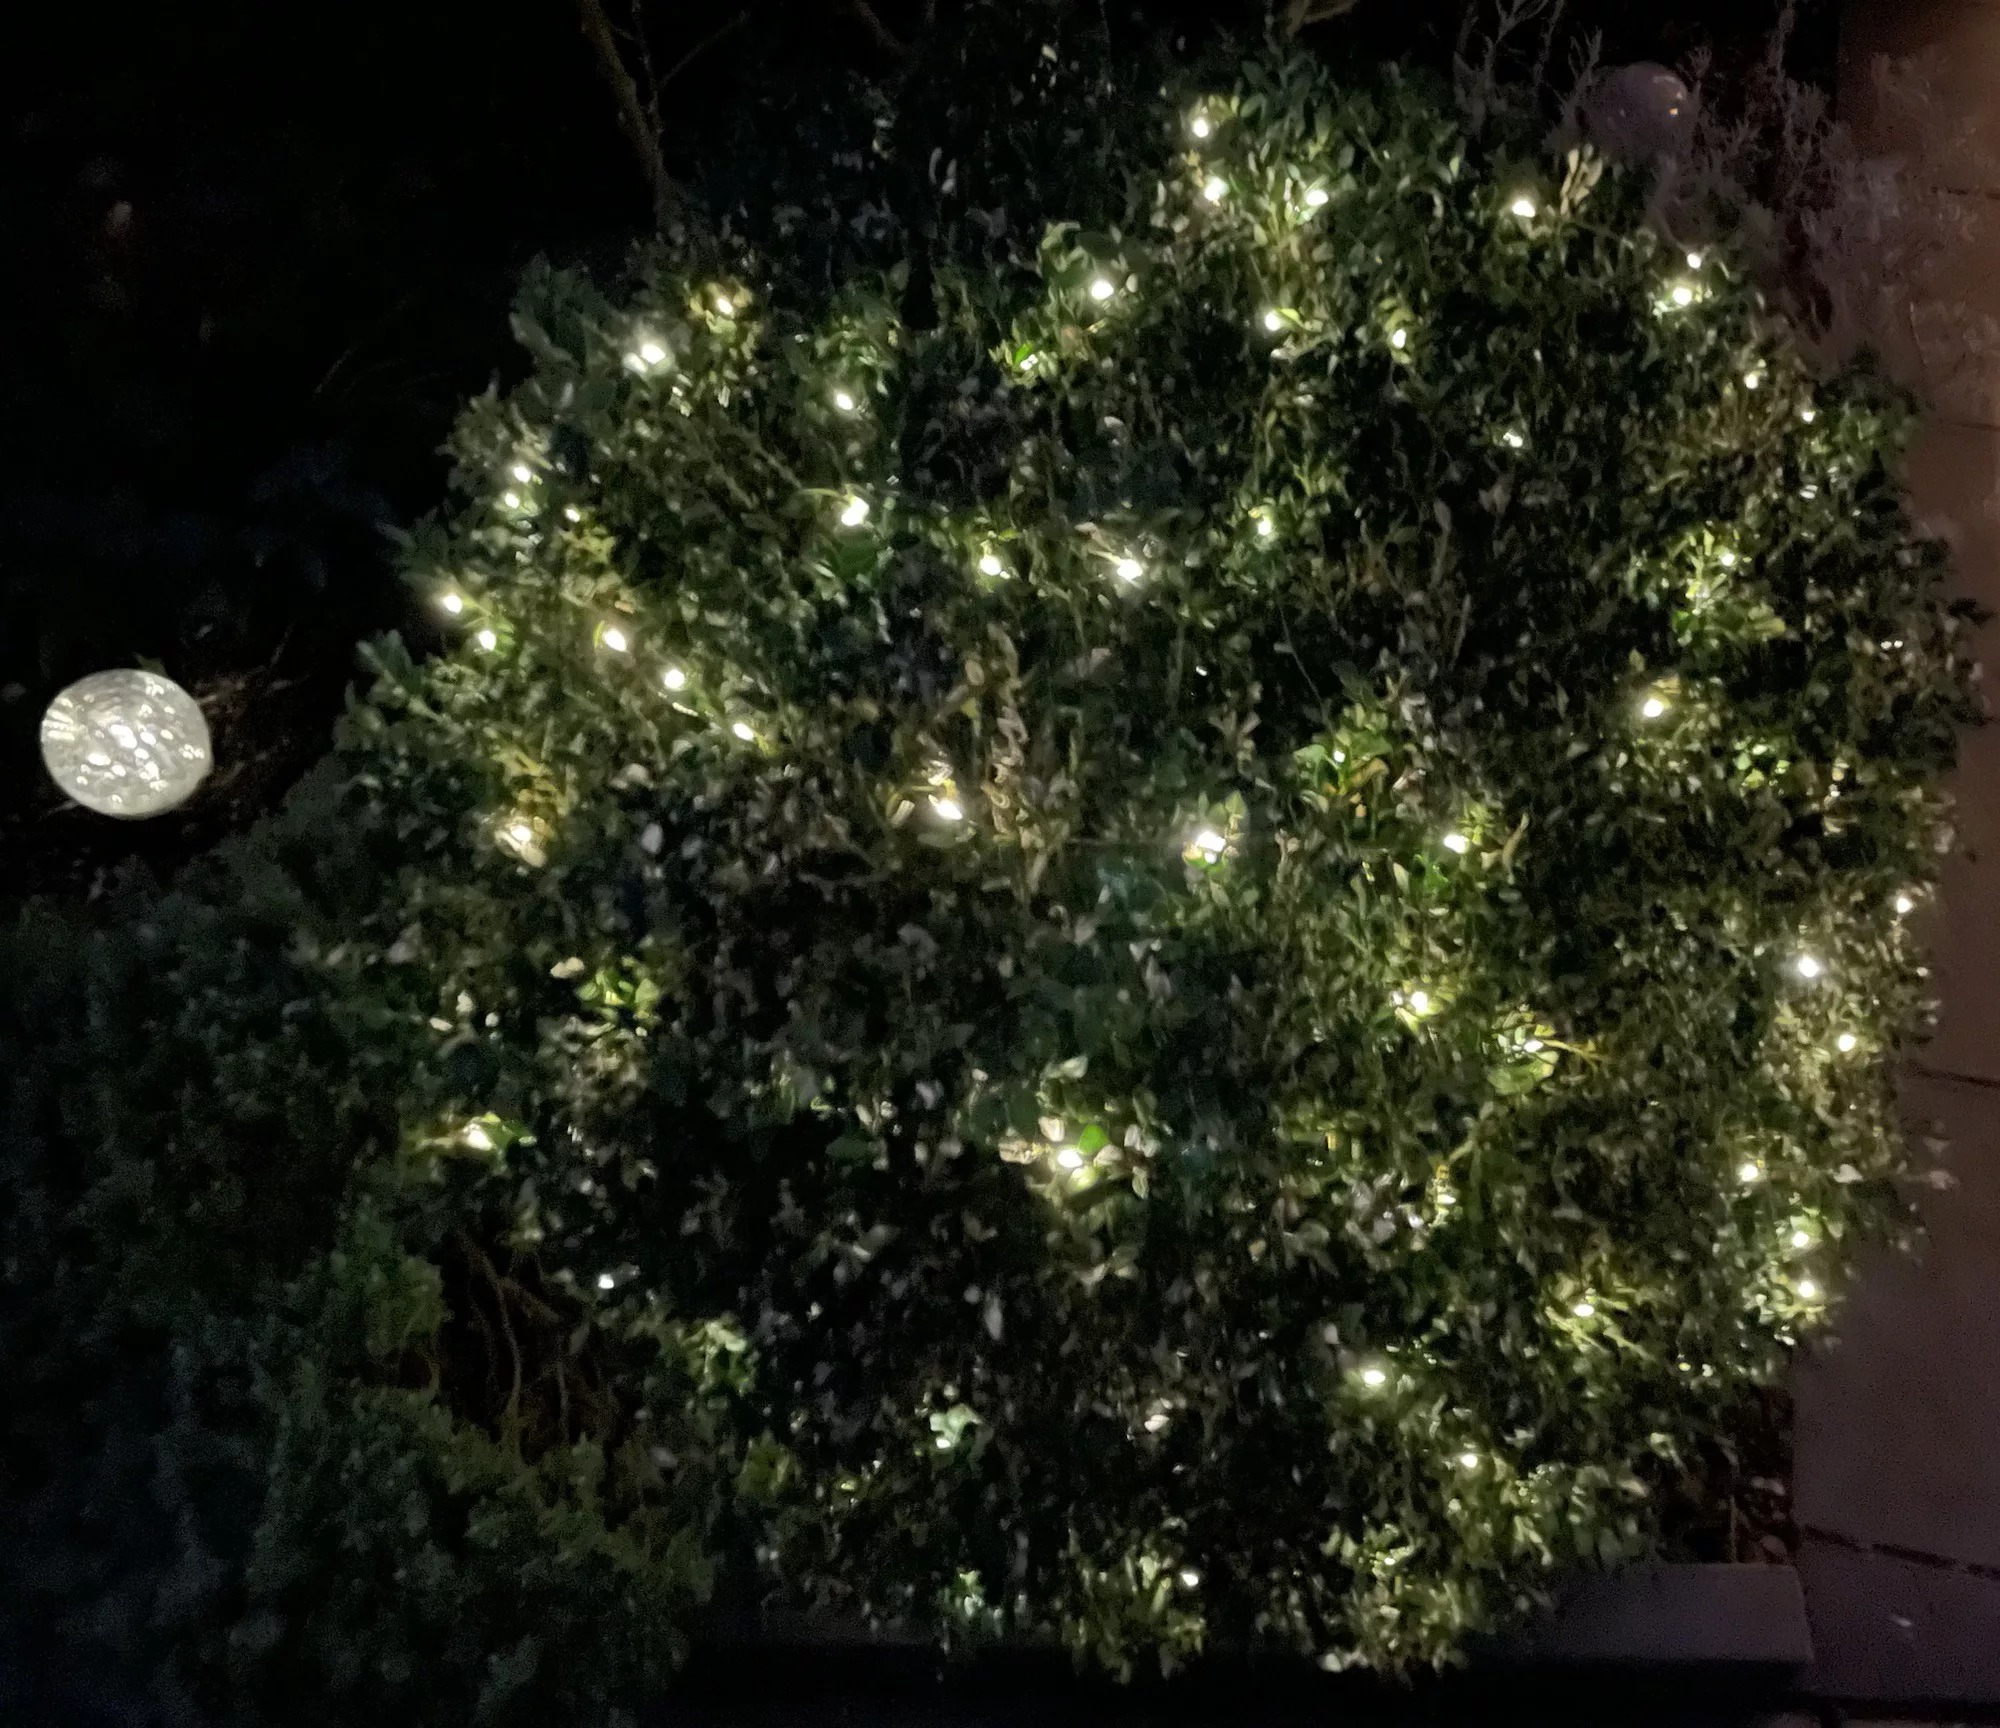 Im Dunkeln der runde Buchsbaum mit Lichterkette, links davon eine runde leuchtende Glaskugel.